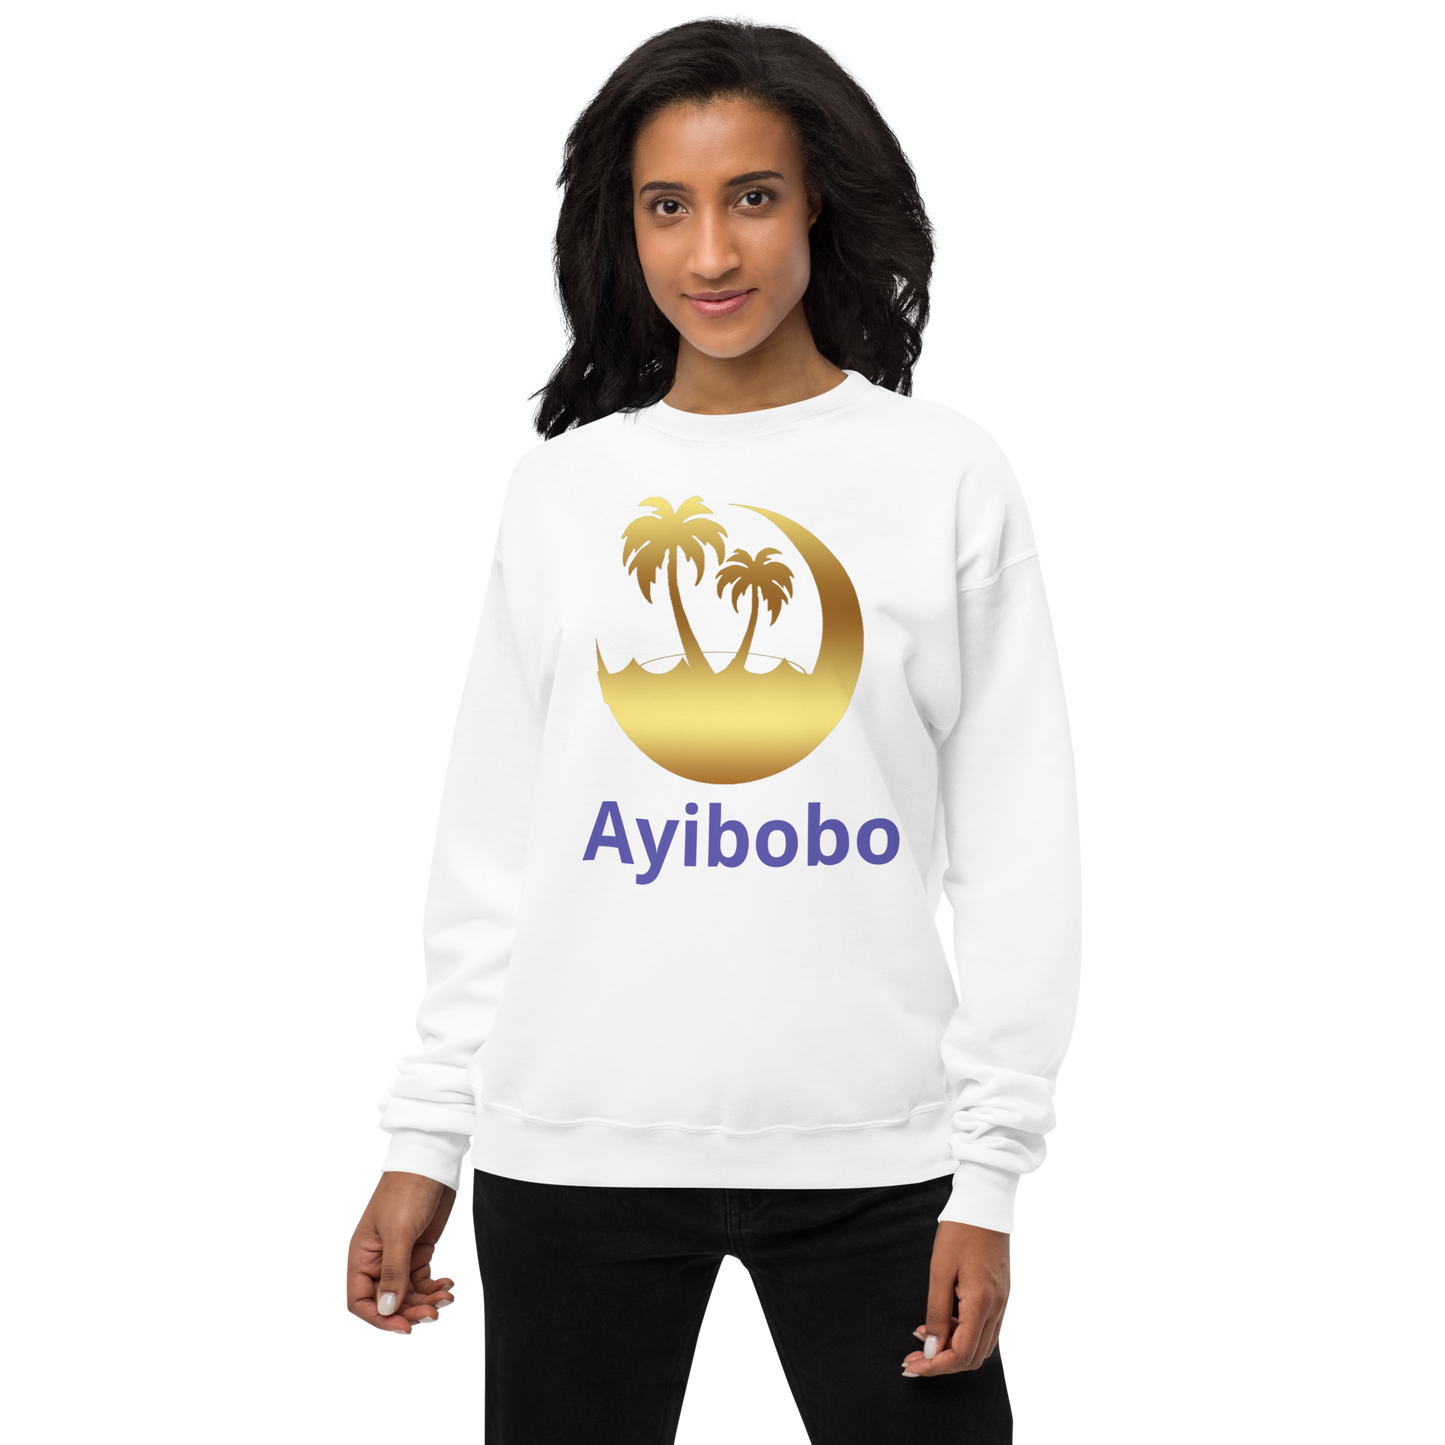 Ayibobo Unisex fleece sweatshirt